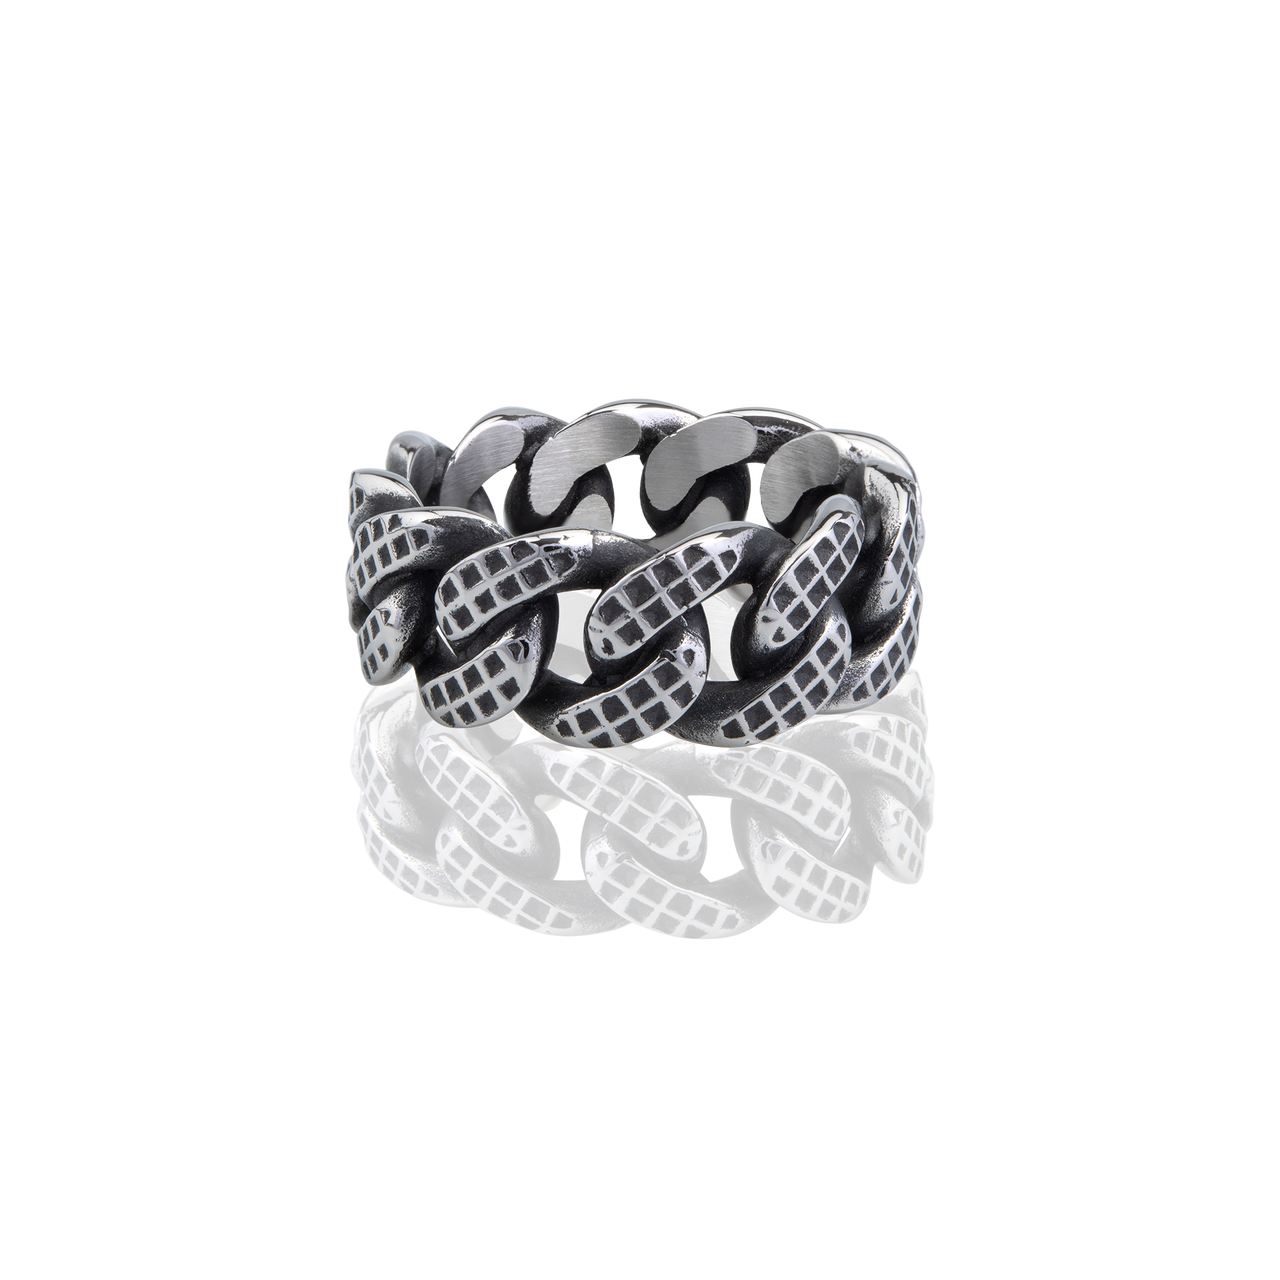 Checkered Curblink Band Ring